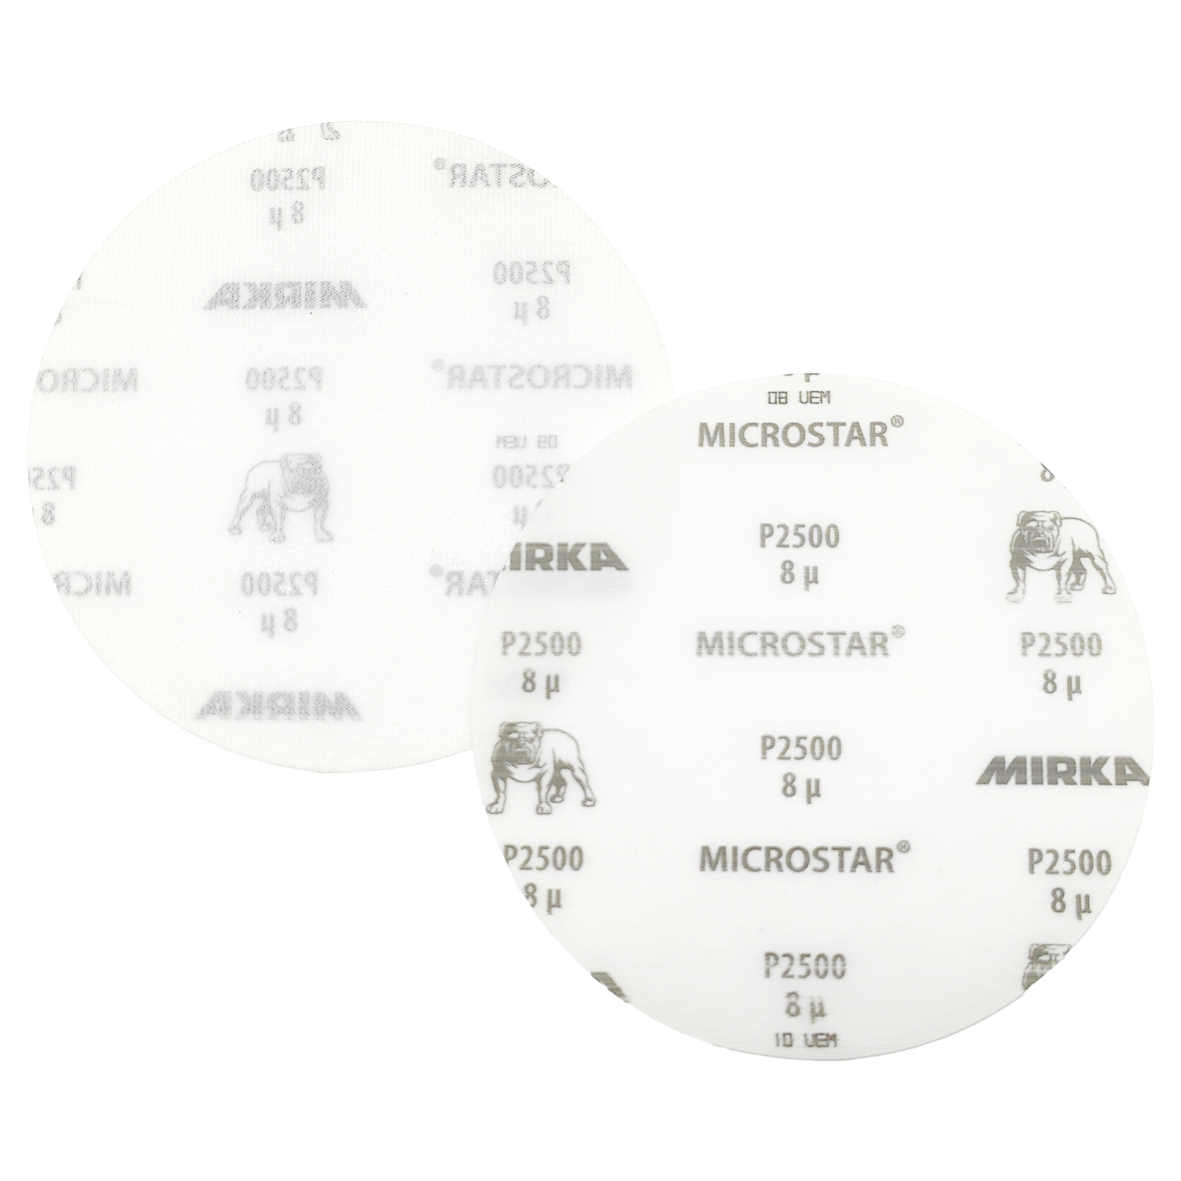 Abbildung Mirka Microstar 150mm Scheiben Vorder- und Rückseite.